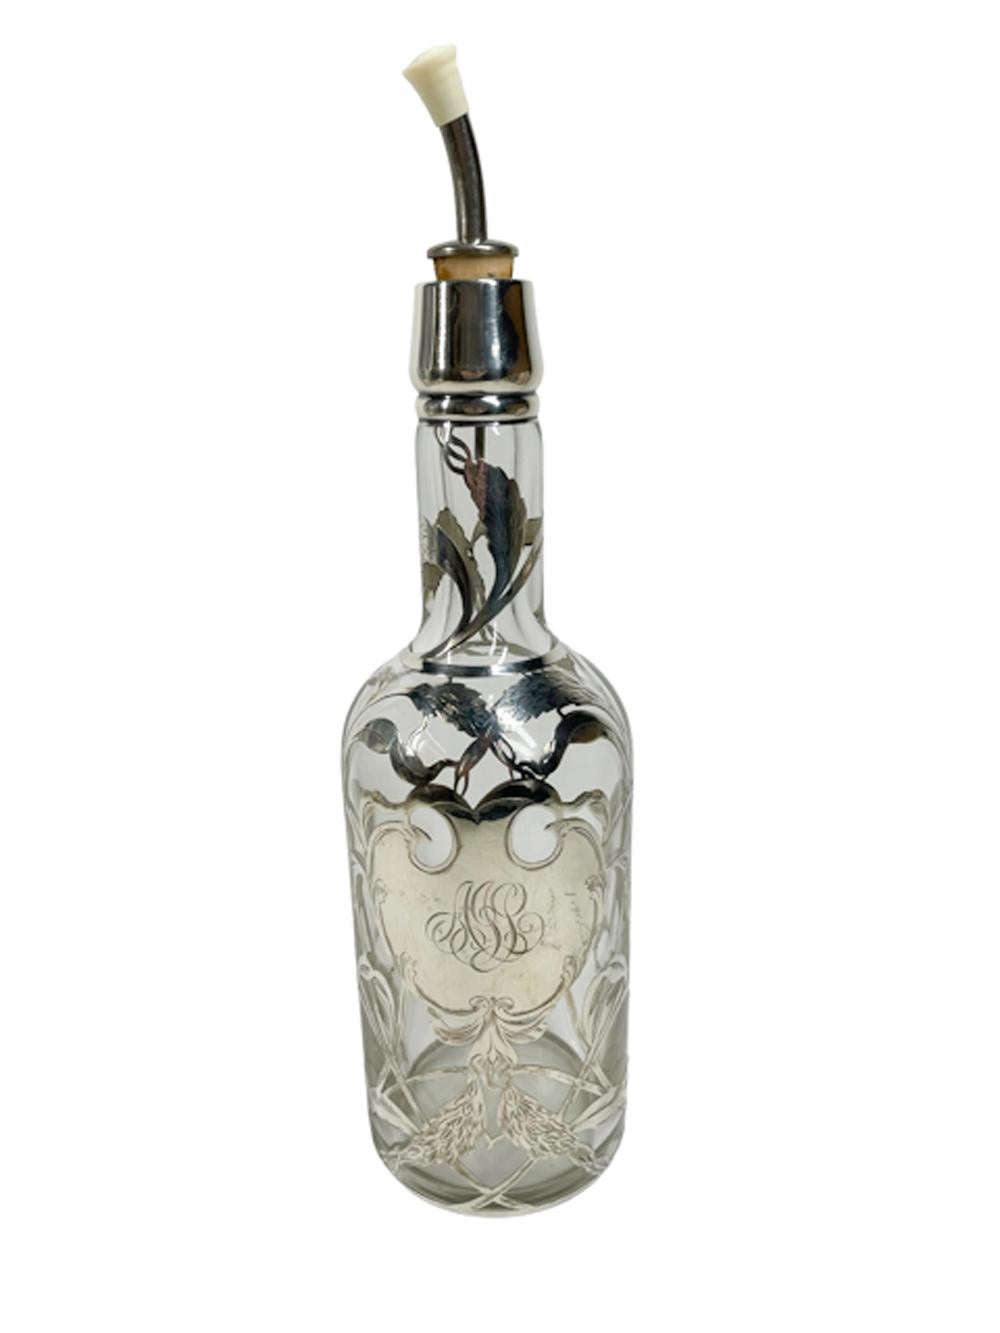 Barflasche oder Dekanter aus amerikanischem Silber mit einem überlagerten Design aus Weizenköpfen um eine monogrammierte Kartusche aus Sterling. Das Weizenmuster steht für Whiskey oder Roggen. Backbar-Flaschen waren vom Ende des 19. Jahrhunderts bis